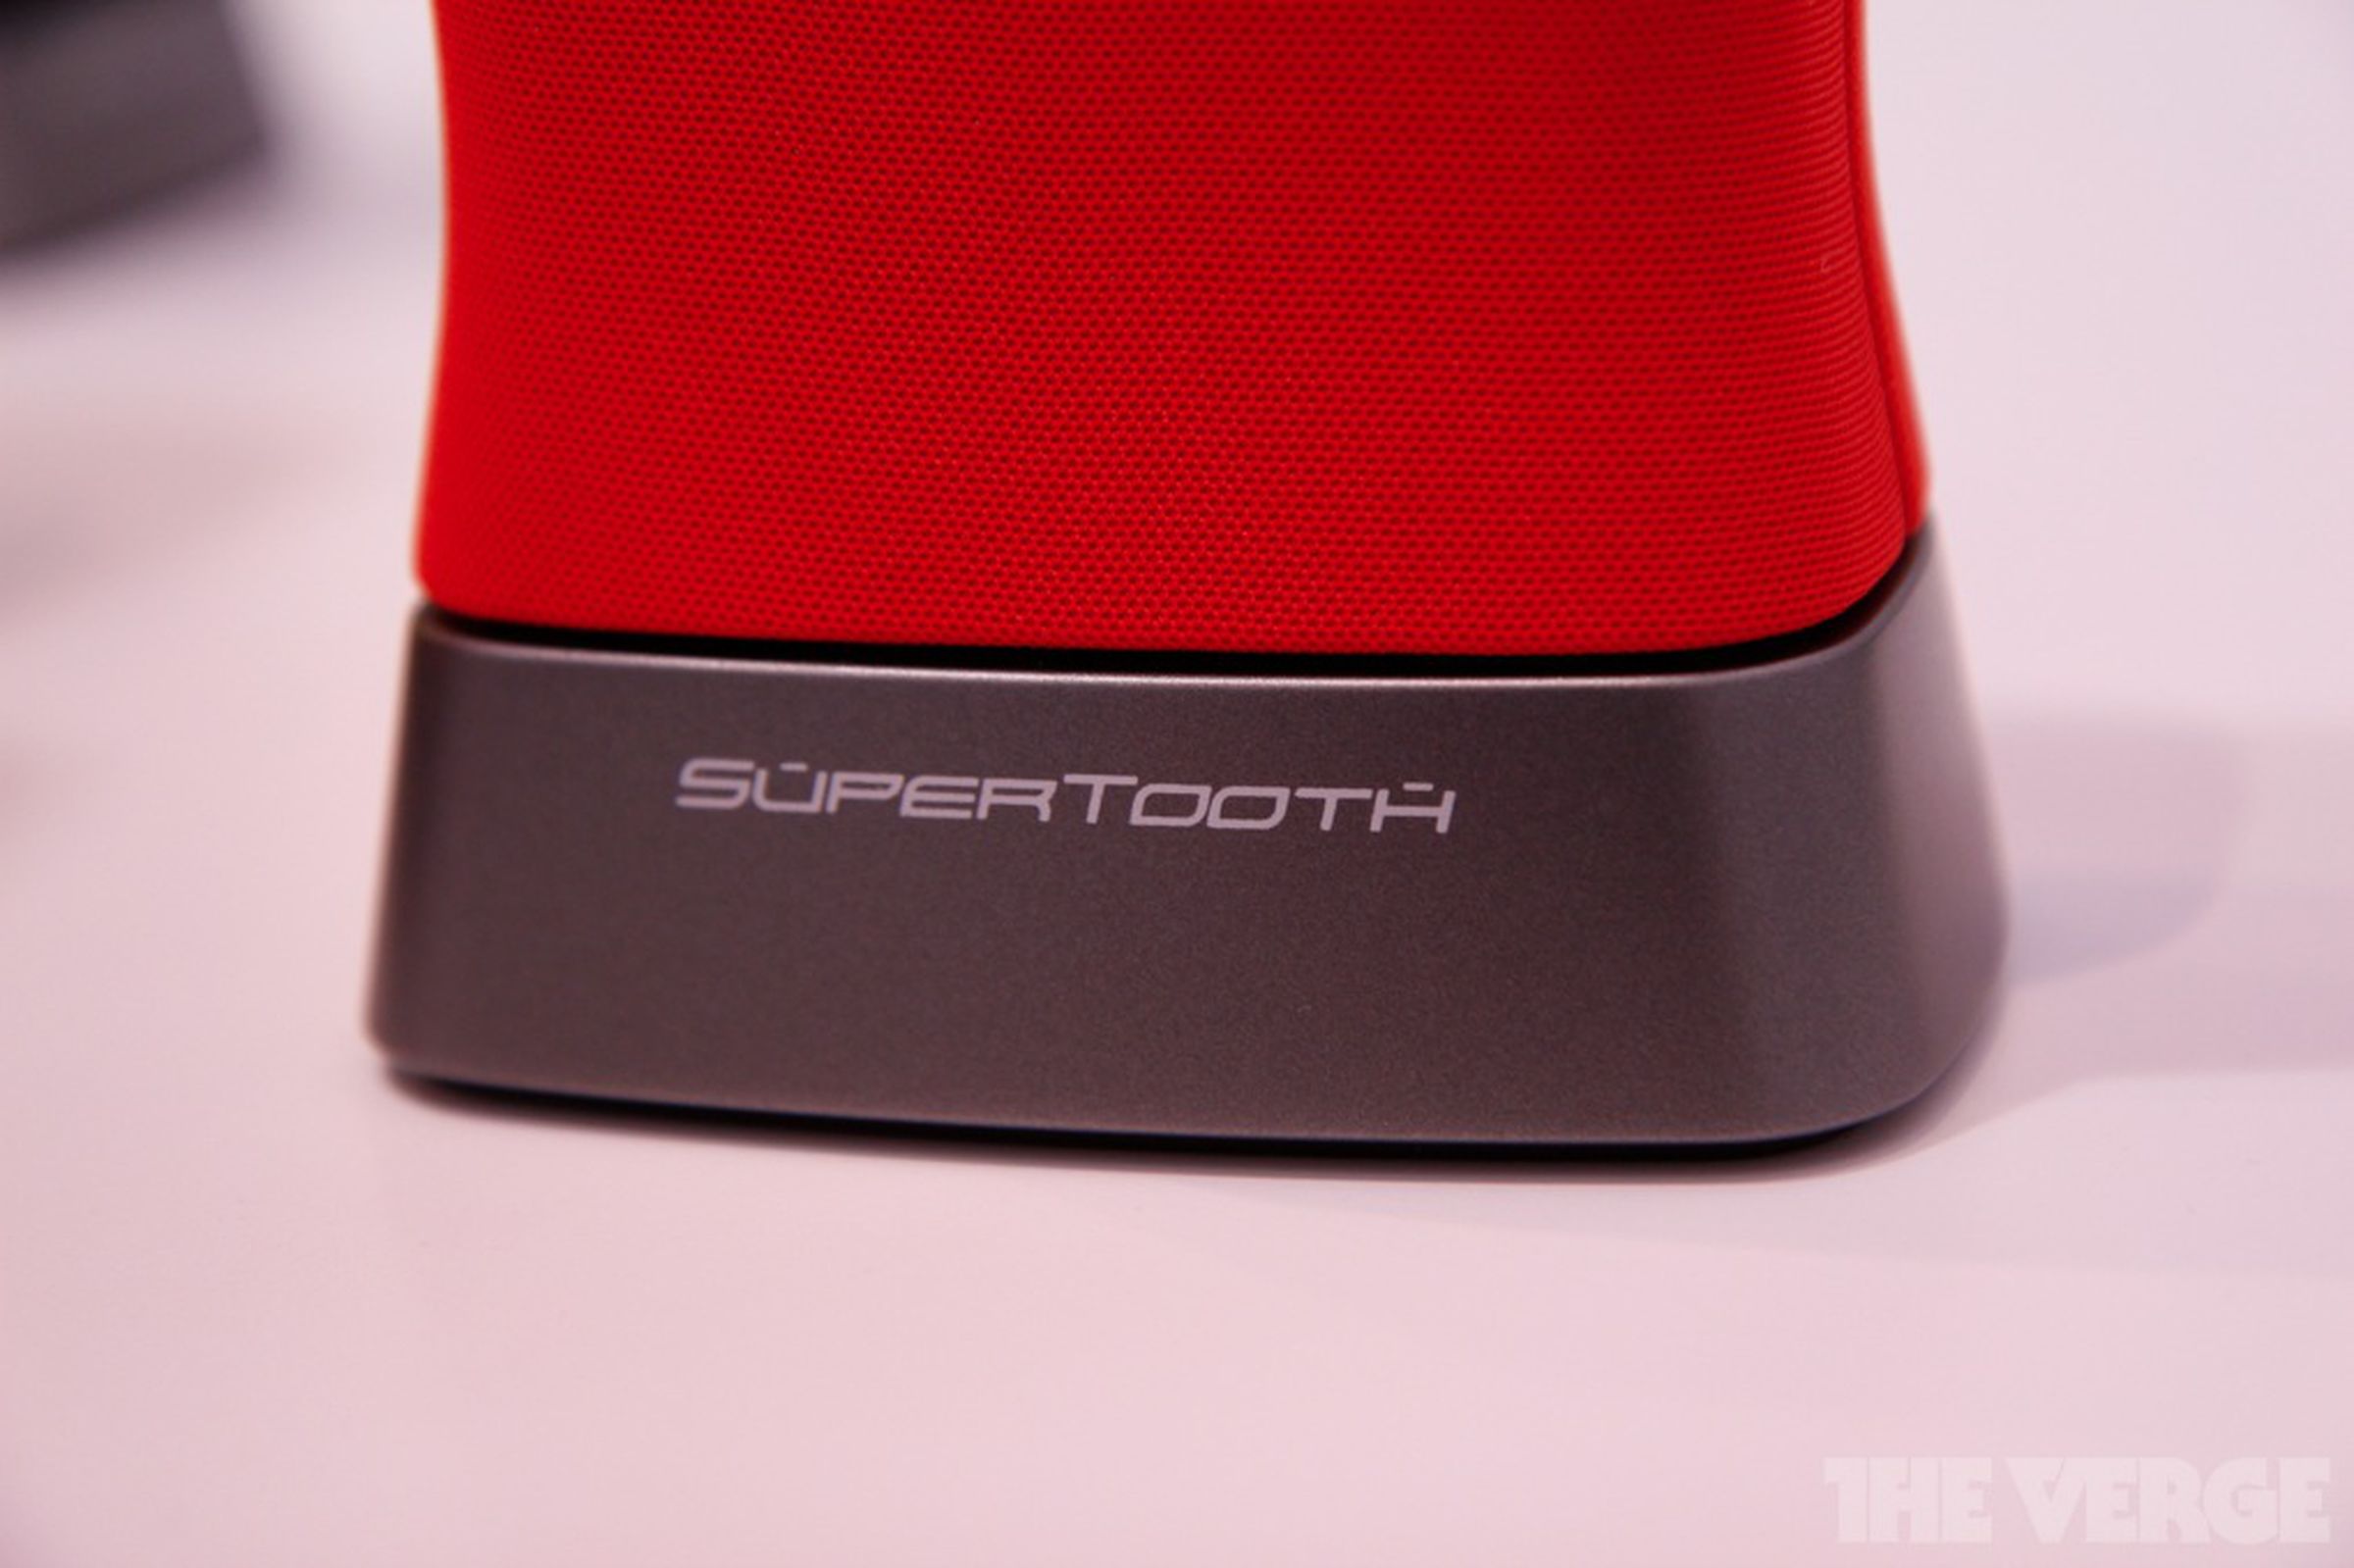 SuperTooth Disco 2 bluetooth speaker pictures